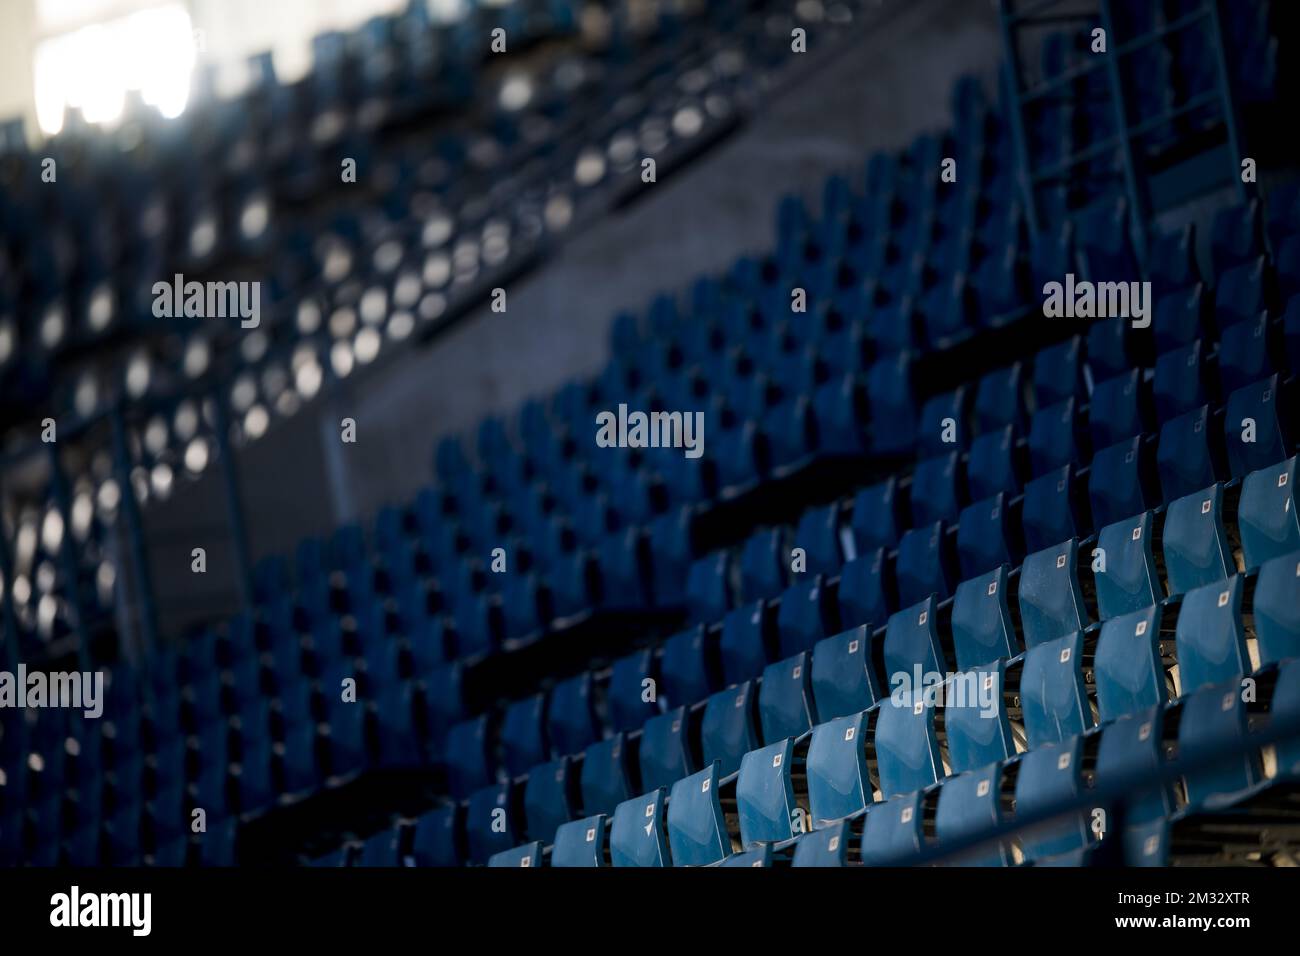 L'illustration montre des sièges vides lors d'un match de football amical entre l'équipe belge de première division KAA Gent et l'équipe française Ligue 1 Olympique Lyonnais, mercredi 22 juillet 2020 à Gand, en préparation de la prochaine saison 2020-2021. BELGA PHOTO JASPER JACOBS Banque D'Images